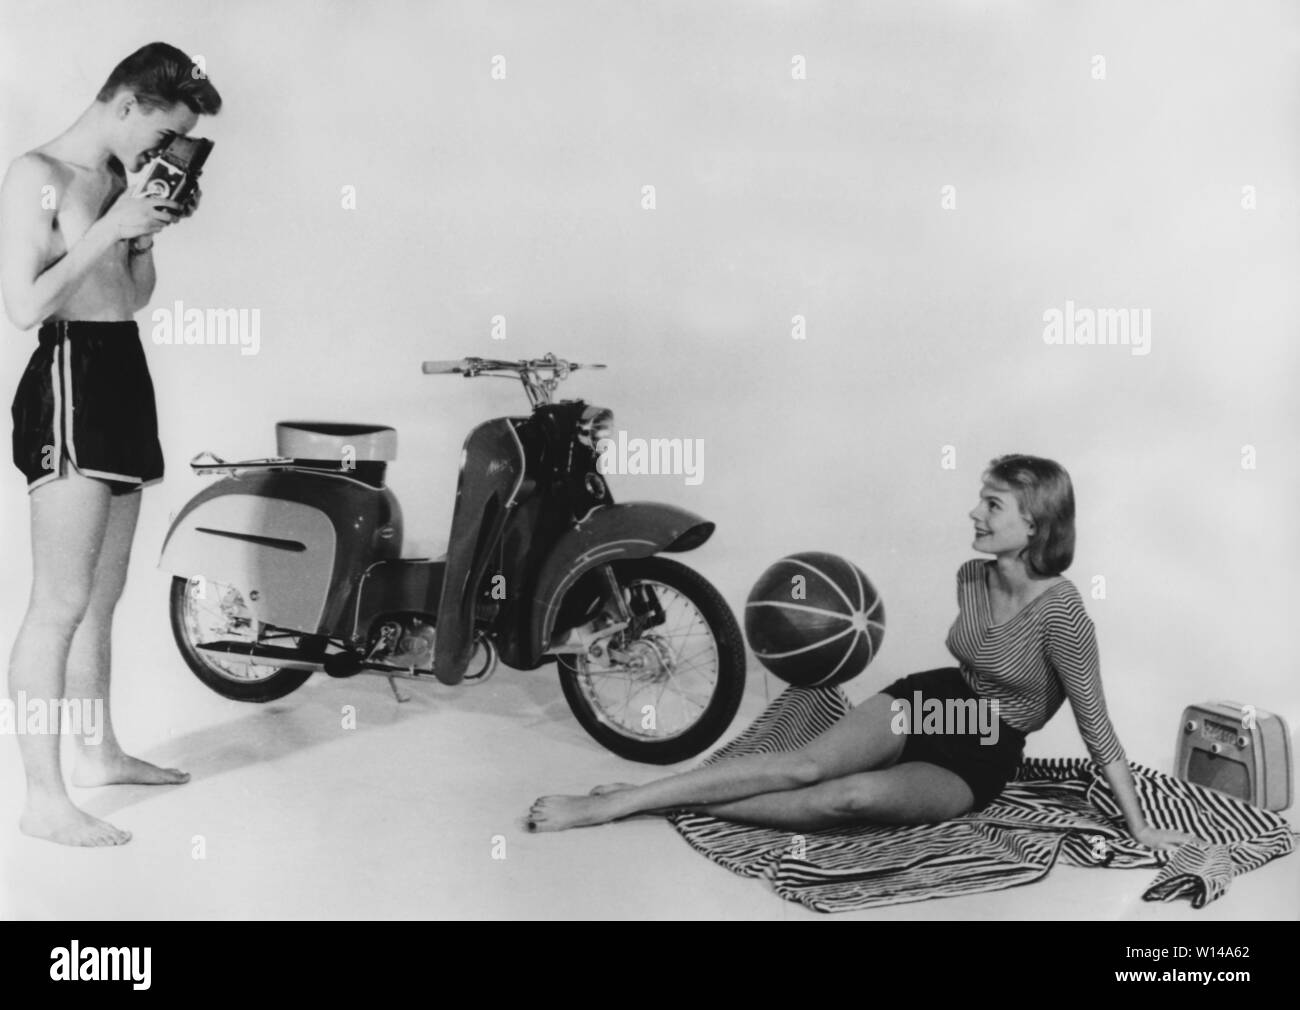 Los adolescentes de la década de 1950. Un adolescente y joven con una nueva marca Monark Monarsccot modelo M33. Un ciclomotor lanzado en 1957 con un diseño futurista con el aspecto de una vespa. Había dos engranajes y presupuestó 945 sek. Suecia 1957 Foto de stock